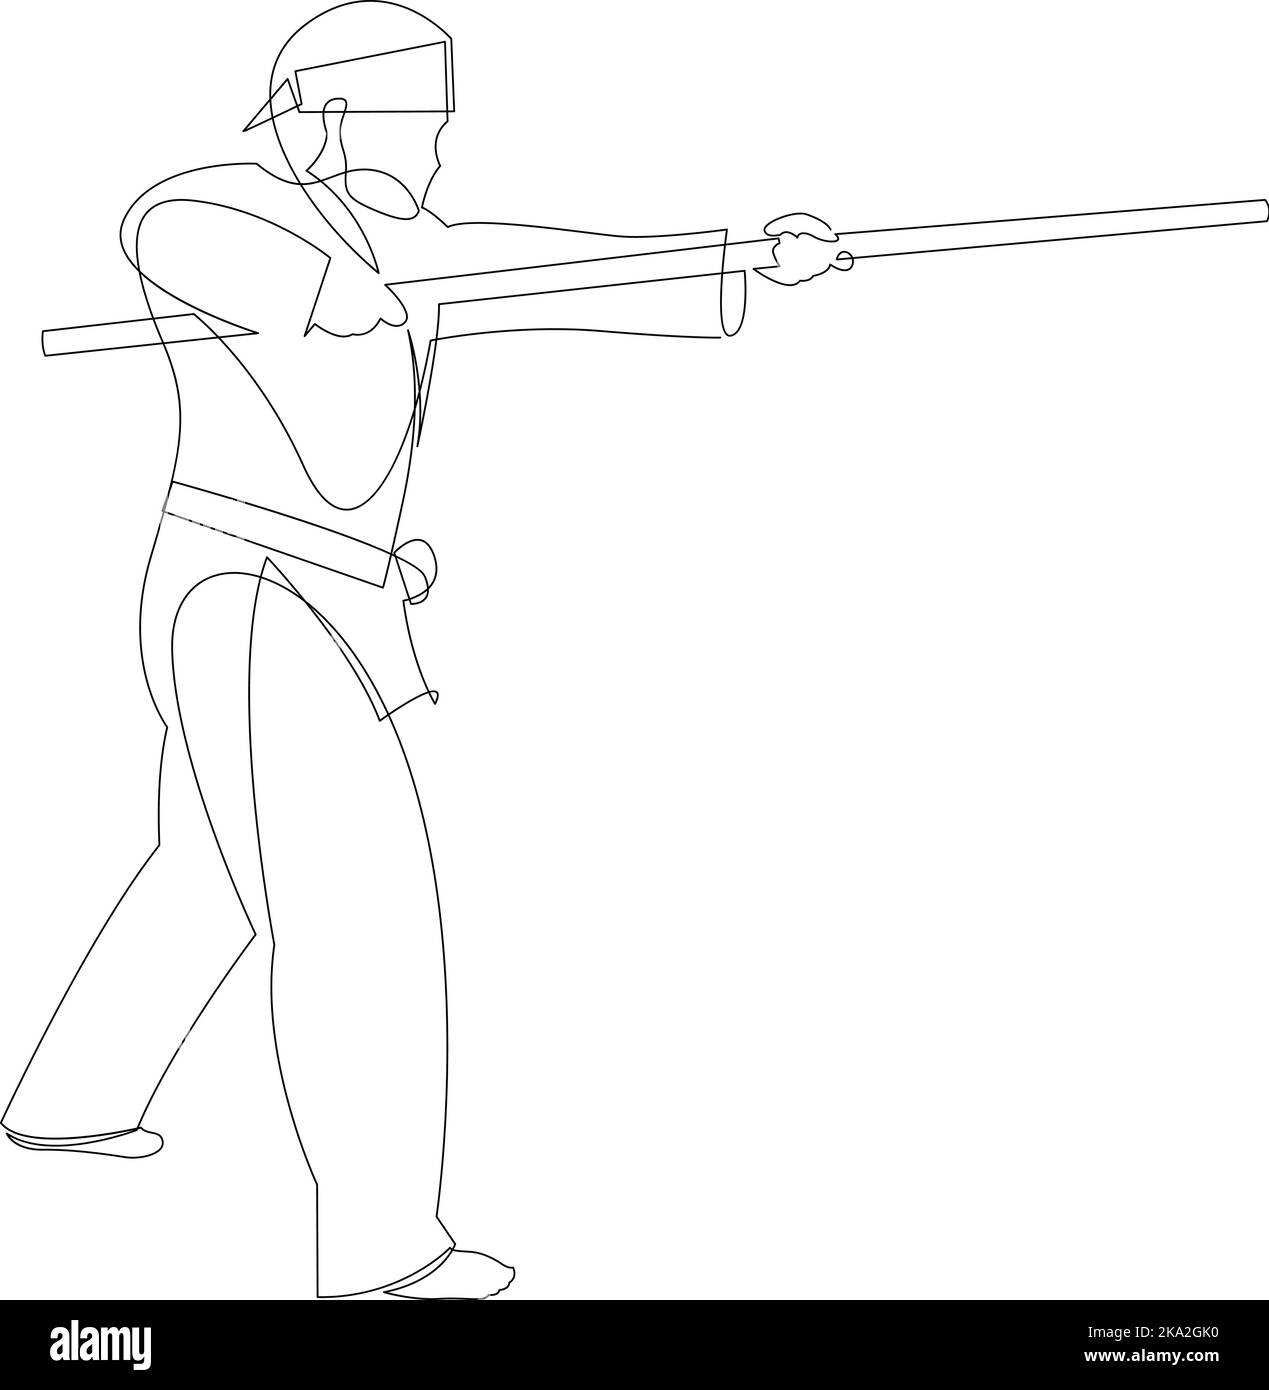 Dessin de ligne continue de shaolin monk homme pratique kung fu en utilisant le long personnel. Concept sportif combatif chinois traditionnel. Illustration vectorielle Illustration de Vecteur